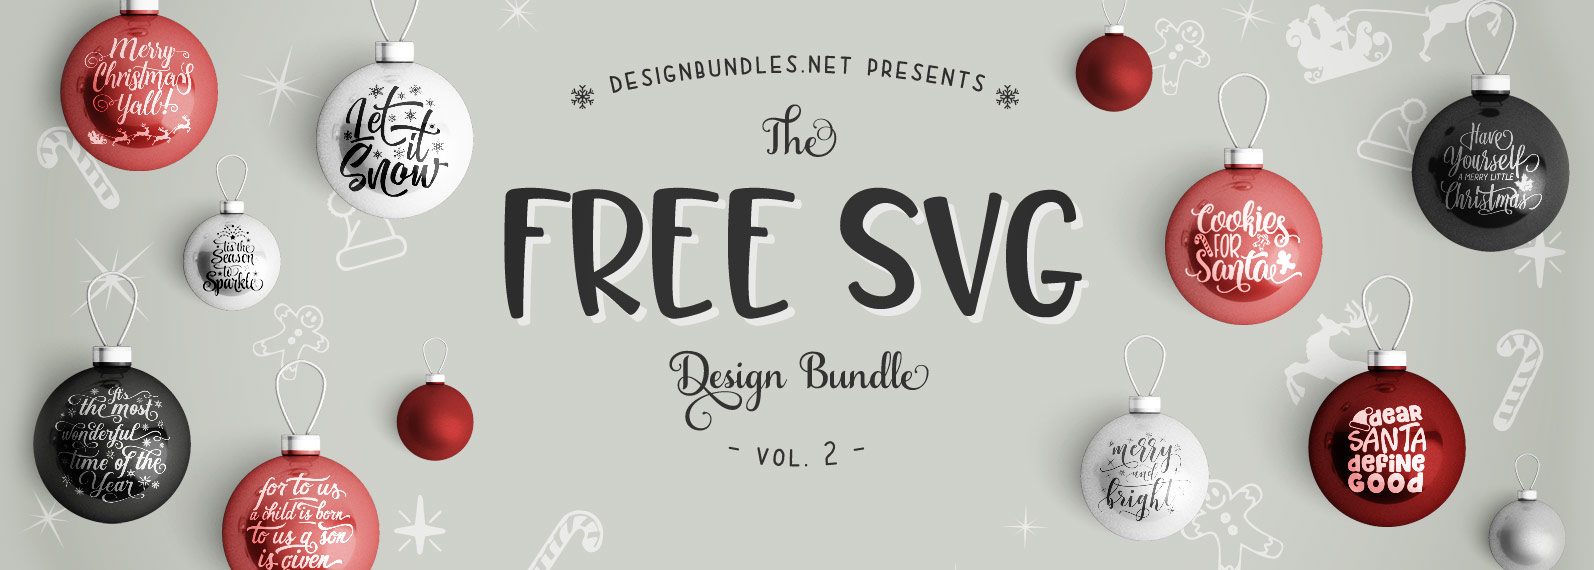 Free SVG Bundle II | Design Bundles